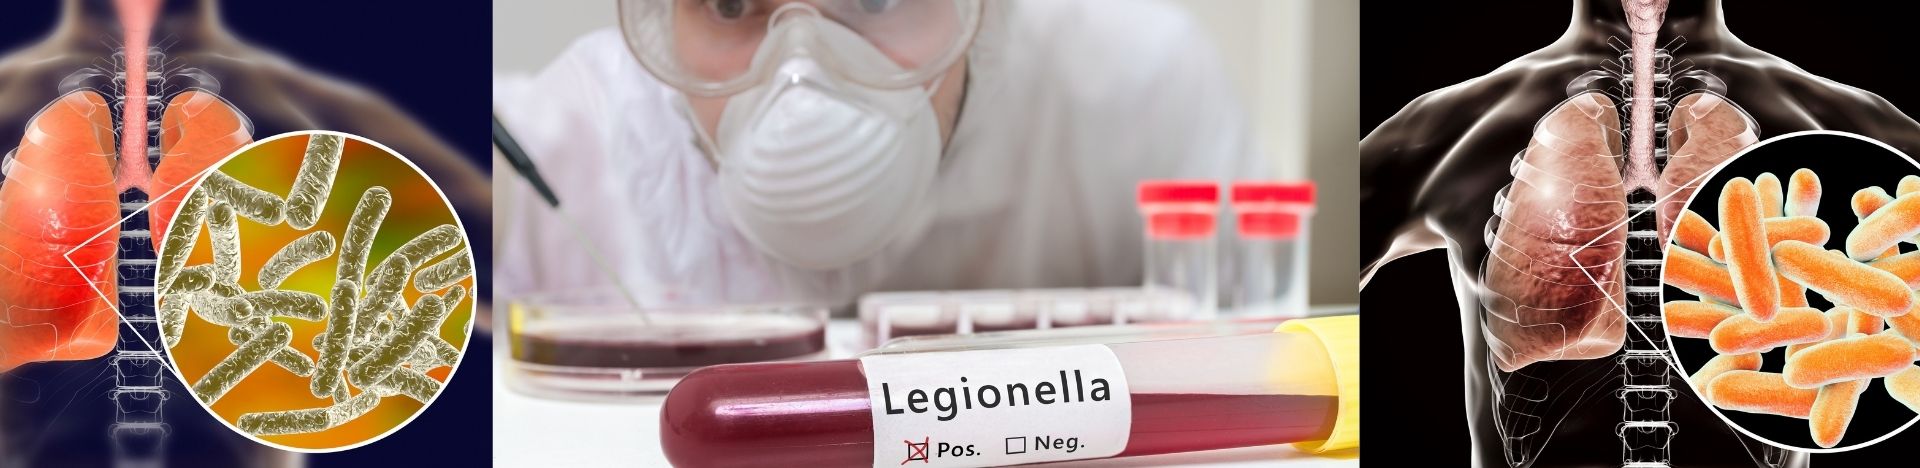 Anti-Legionella Valve